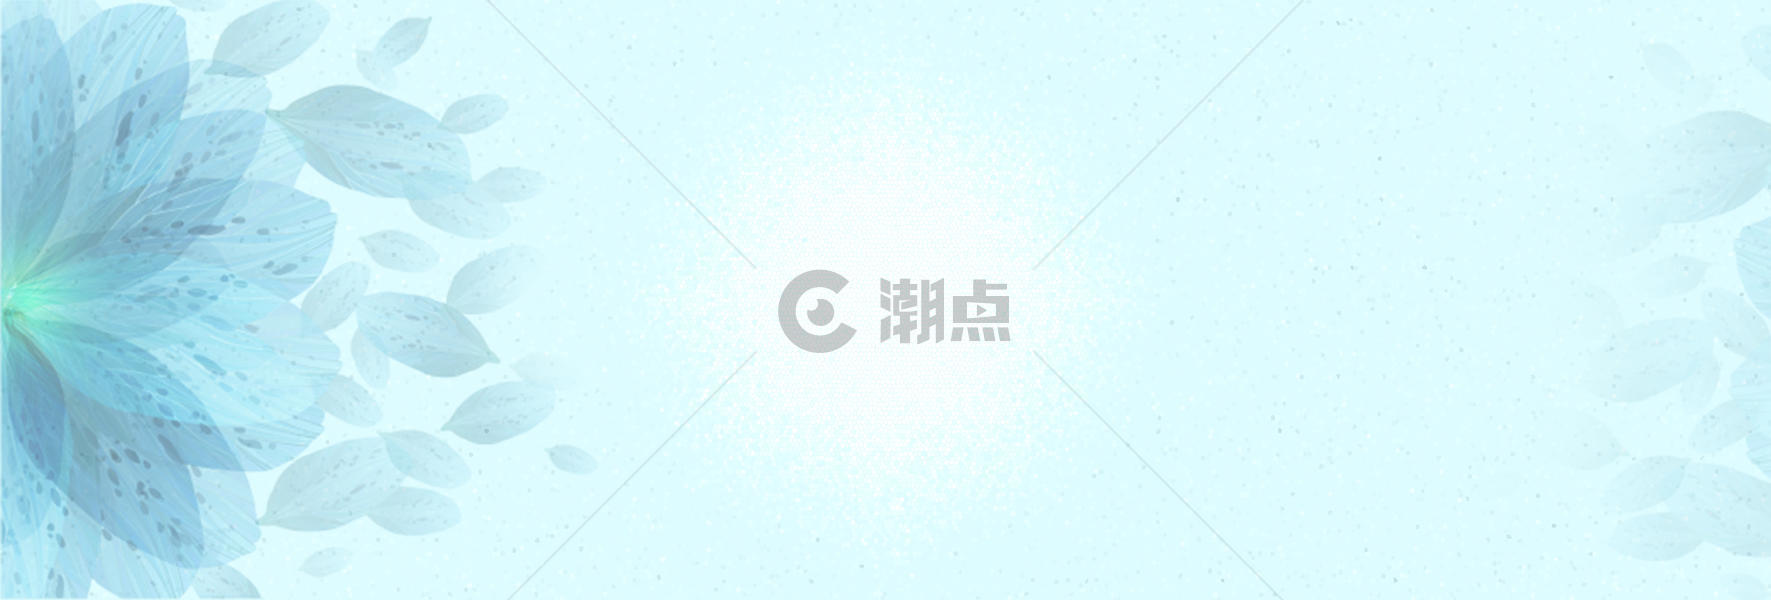 冰蓝清新背景banner 图片素材免费下载